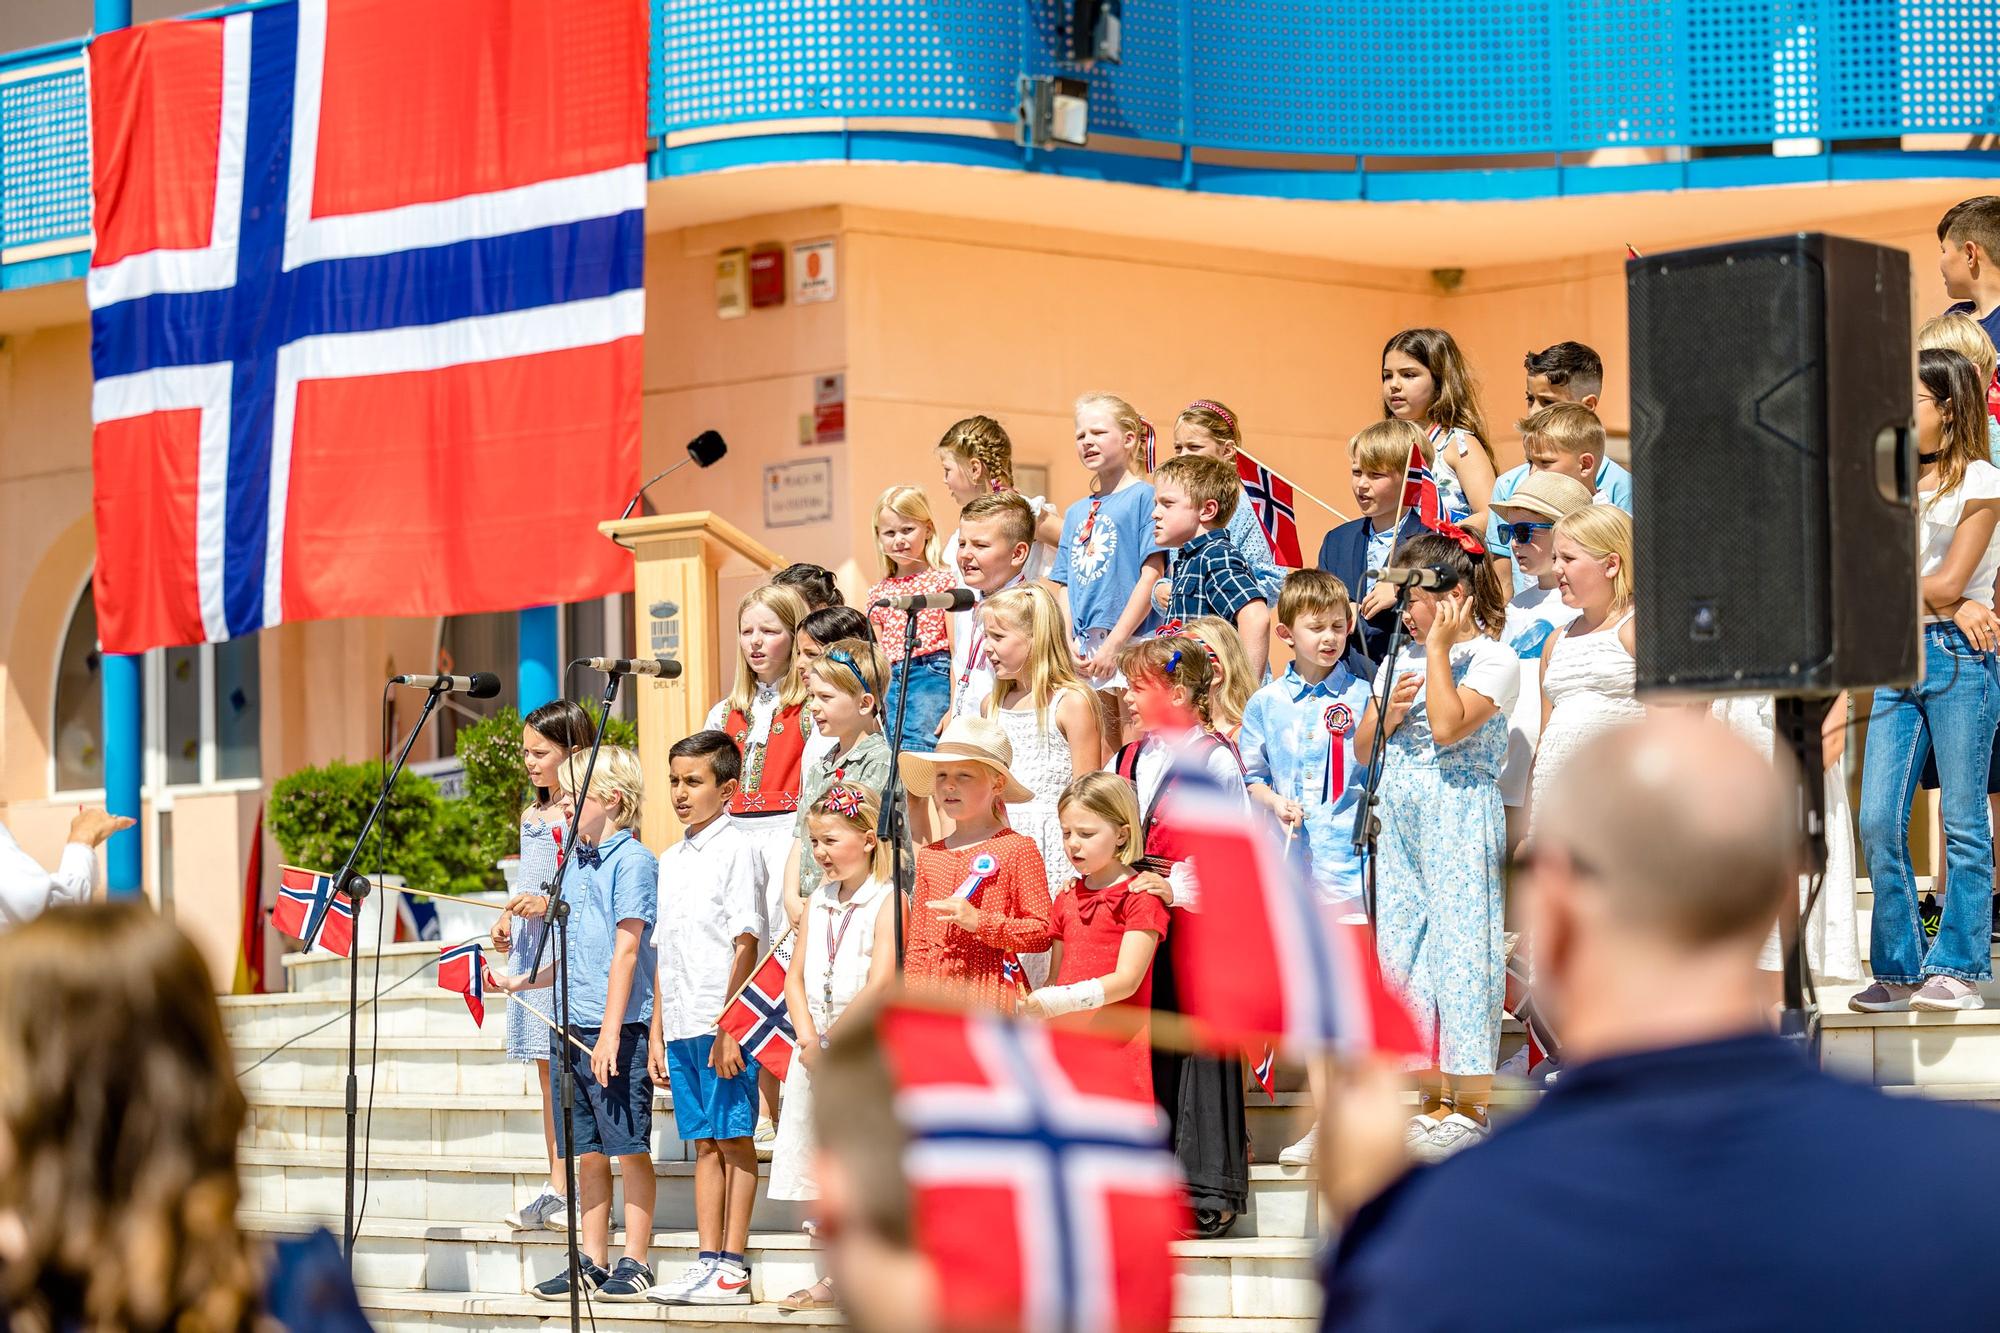 Banderas, desfiles, música, trajes regionales y un sol de justicia. L'Alfàs del Pi ha vuelto a ser este martes una "pequeña" Noruega con la celebración día oficial del país.